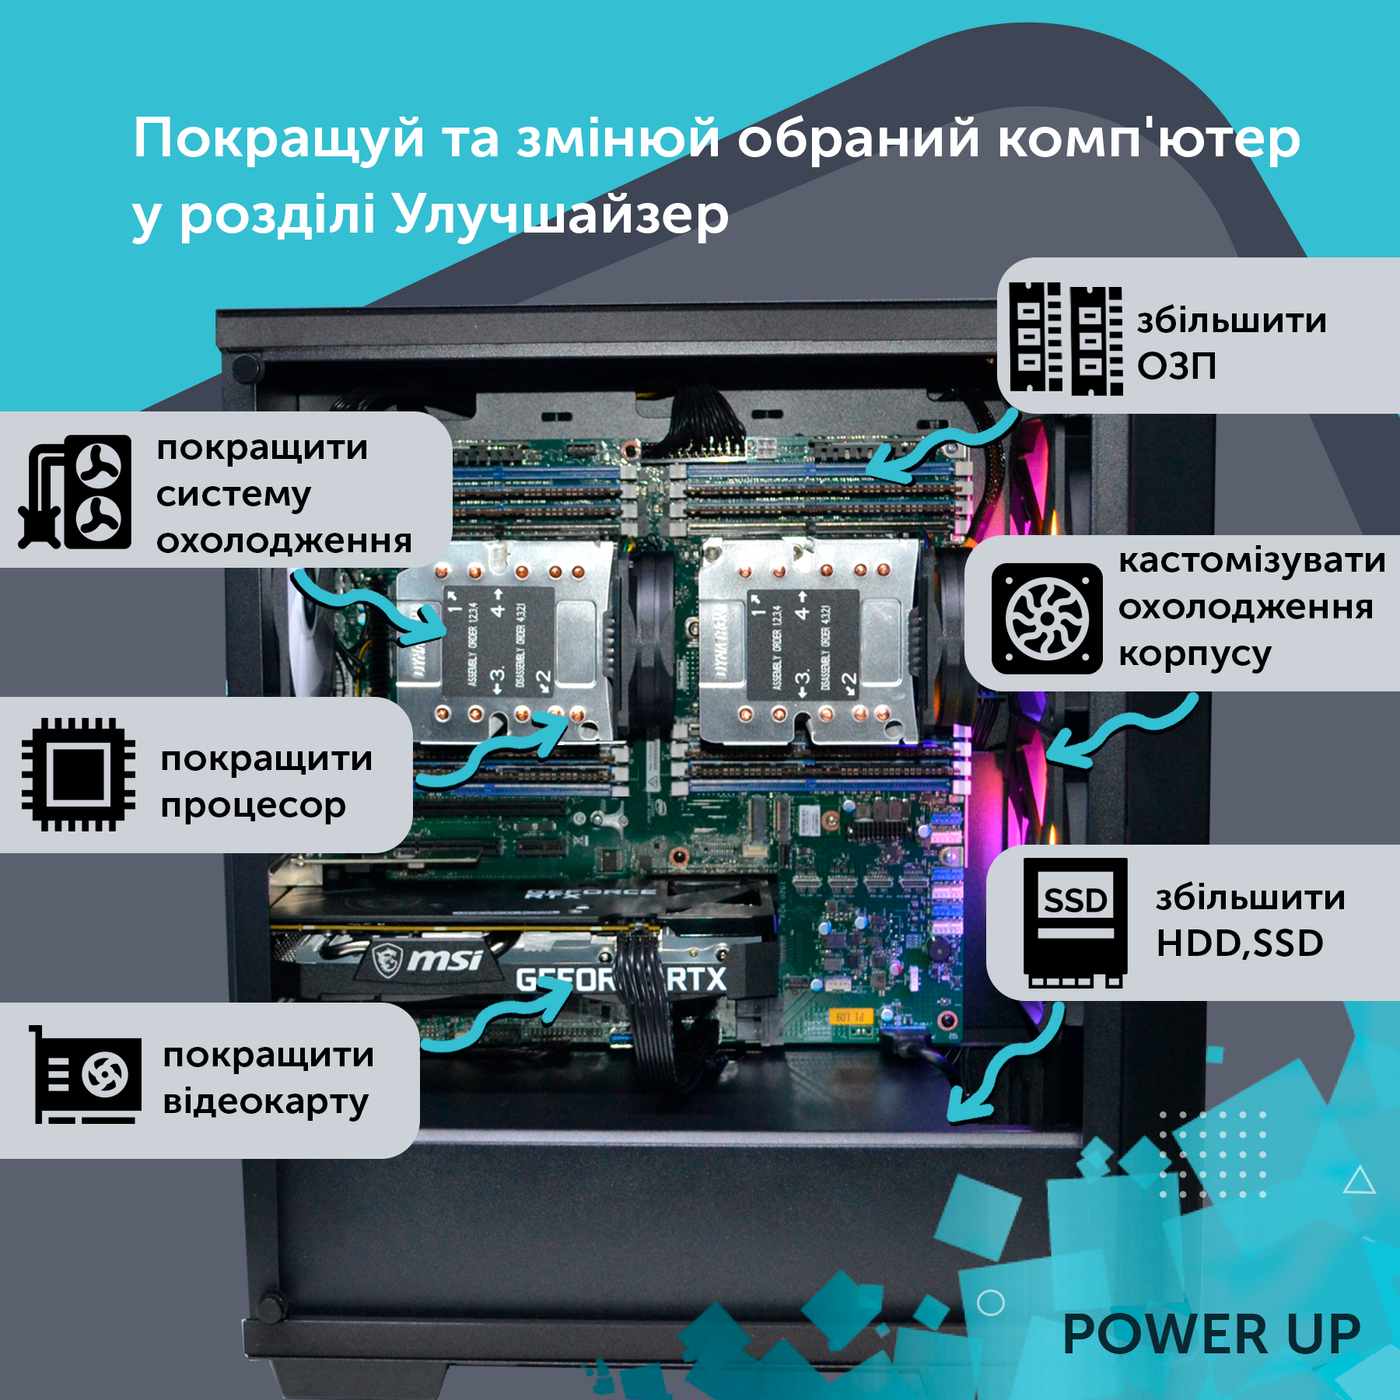 Рабочая станция PowerUp Desktop #230 Ryzen 9 5900x/32 GB/HDD 1 TB/SSD 512GB/GeForce RTX 4070 12GB